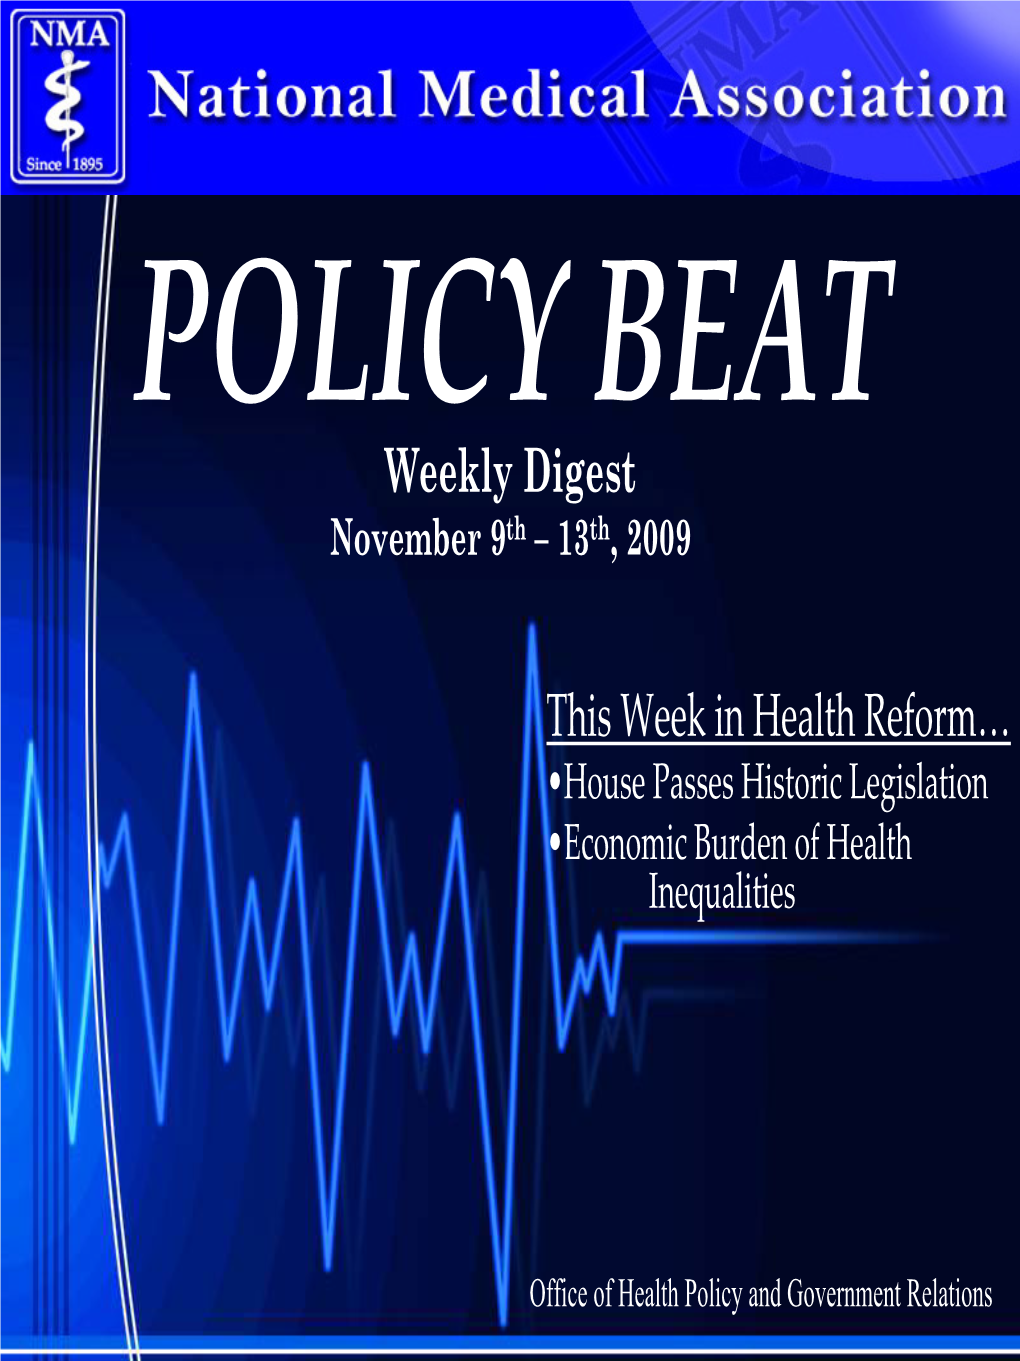 This Week in Health Reform… Weekly Digest